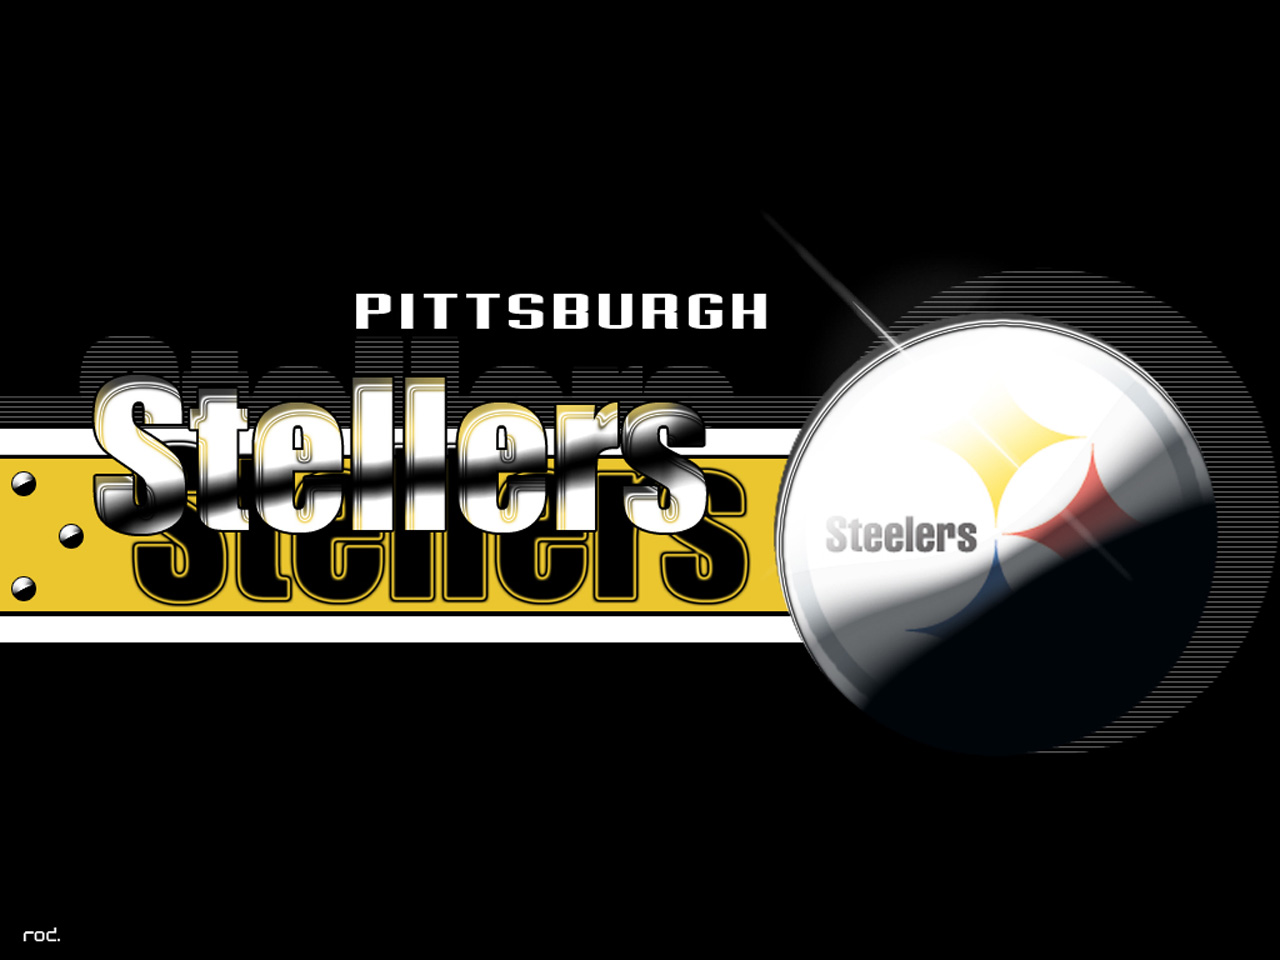  de Pittsburgh Steelers Fondos de pantalla de Pittsburgh Steelers